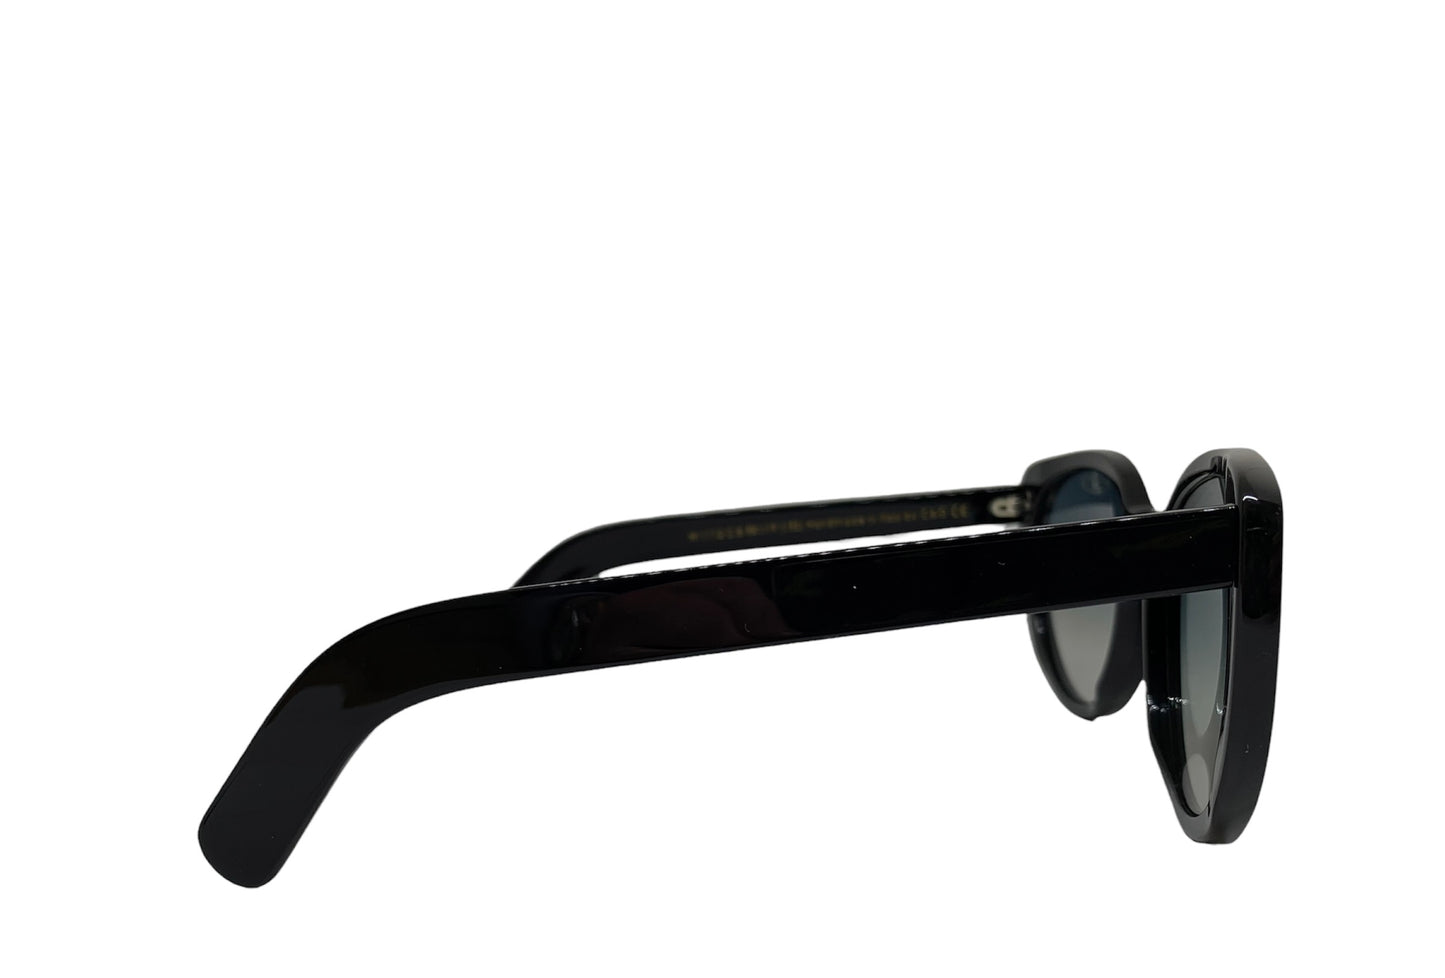 Cutler & Gross Black Oversized Sunglasses